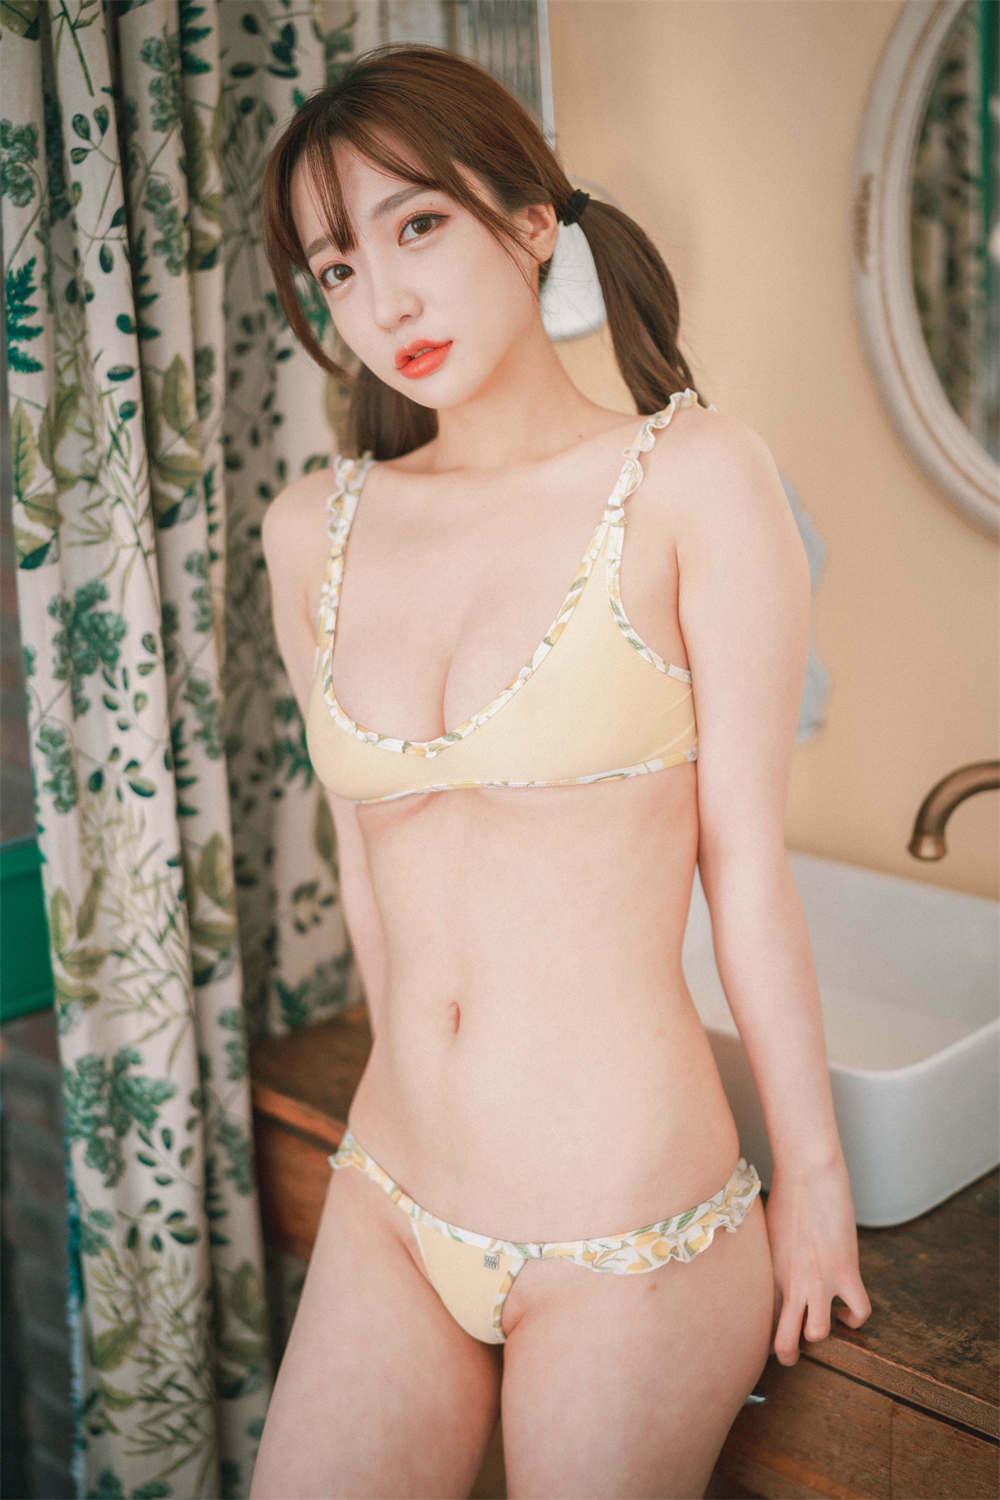 [孫樂樂][손예은][孙乐乐]DJAWA Photo Vol.0131 - Son Ye-Eun (손예은) - Bikini Vacation #1